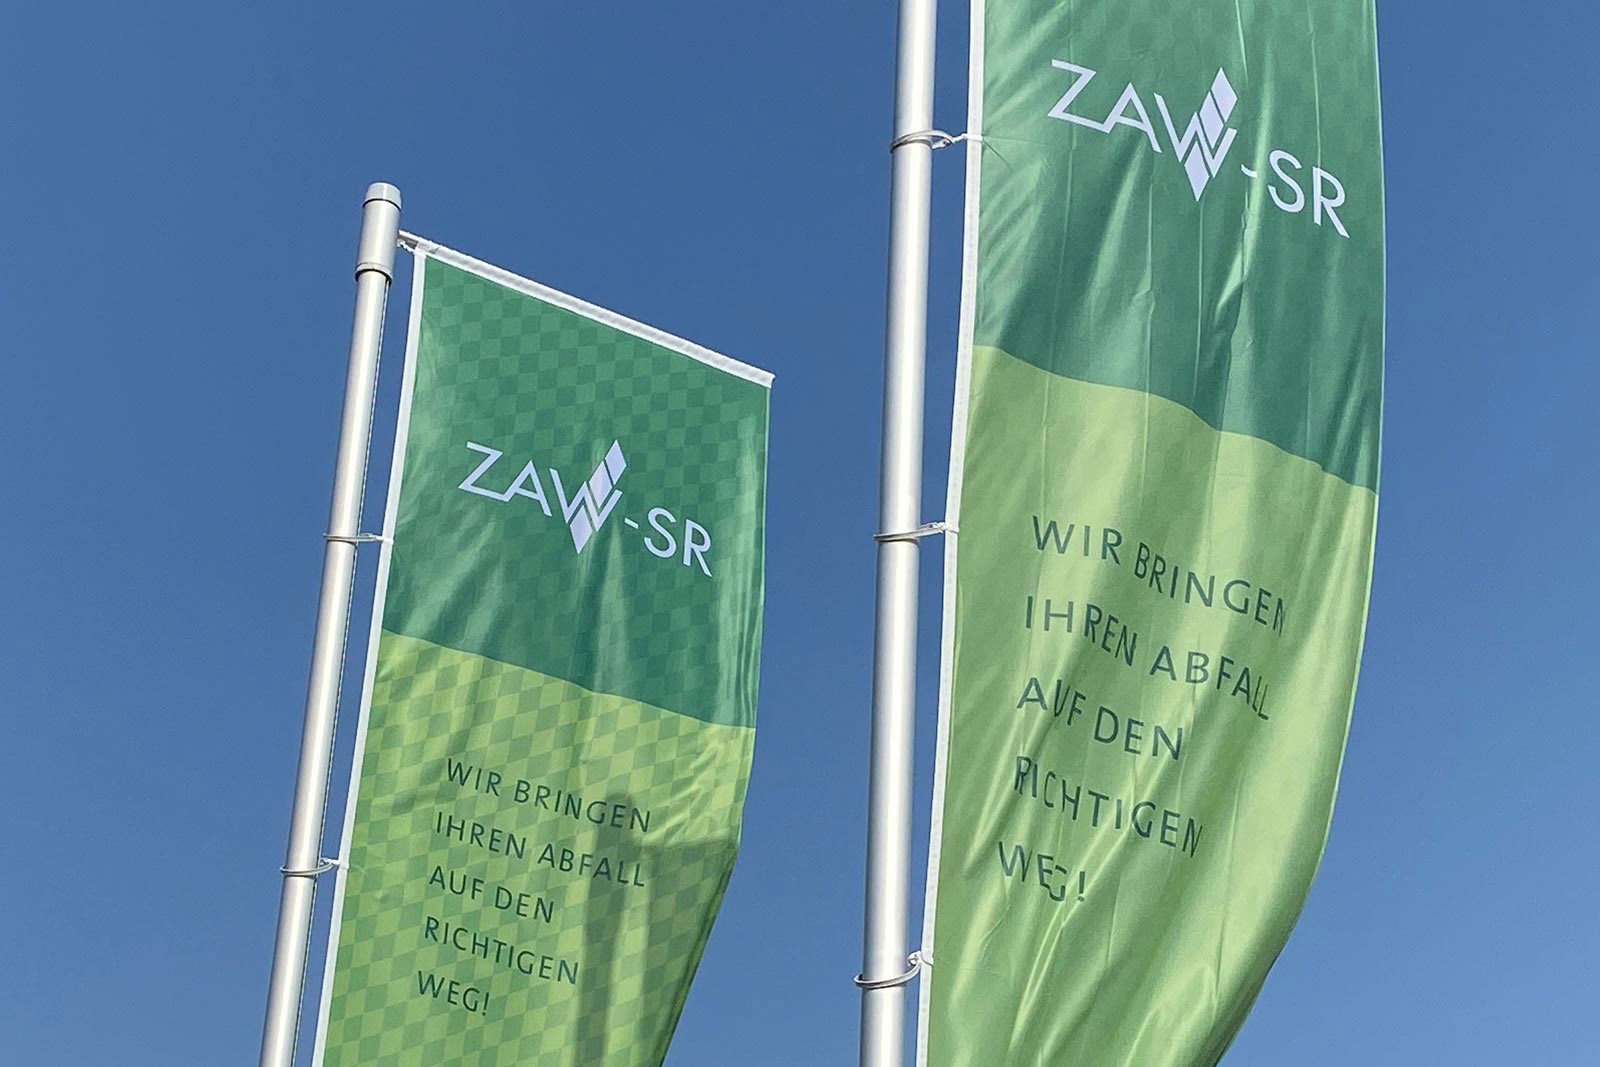 Grüne Fahnen mit ZAW-SR Logo wehend im Wind